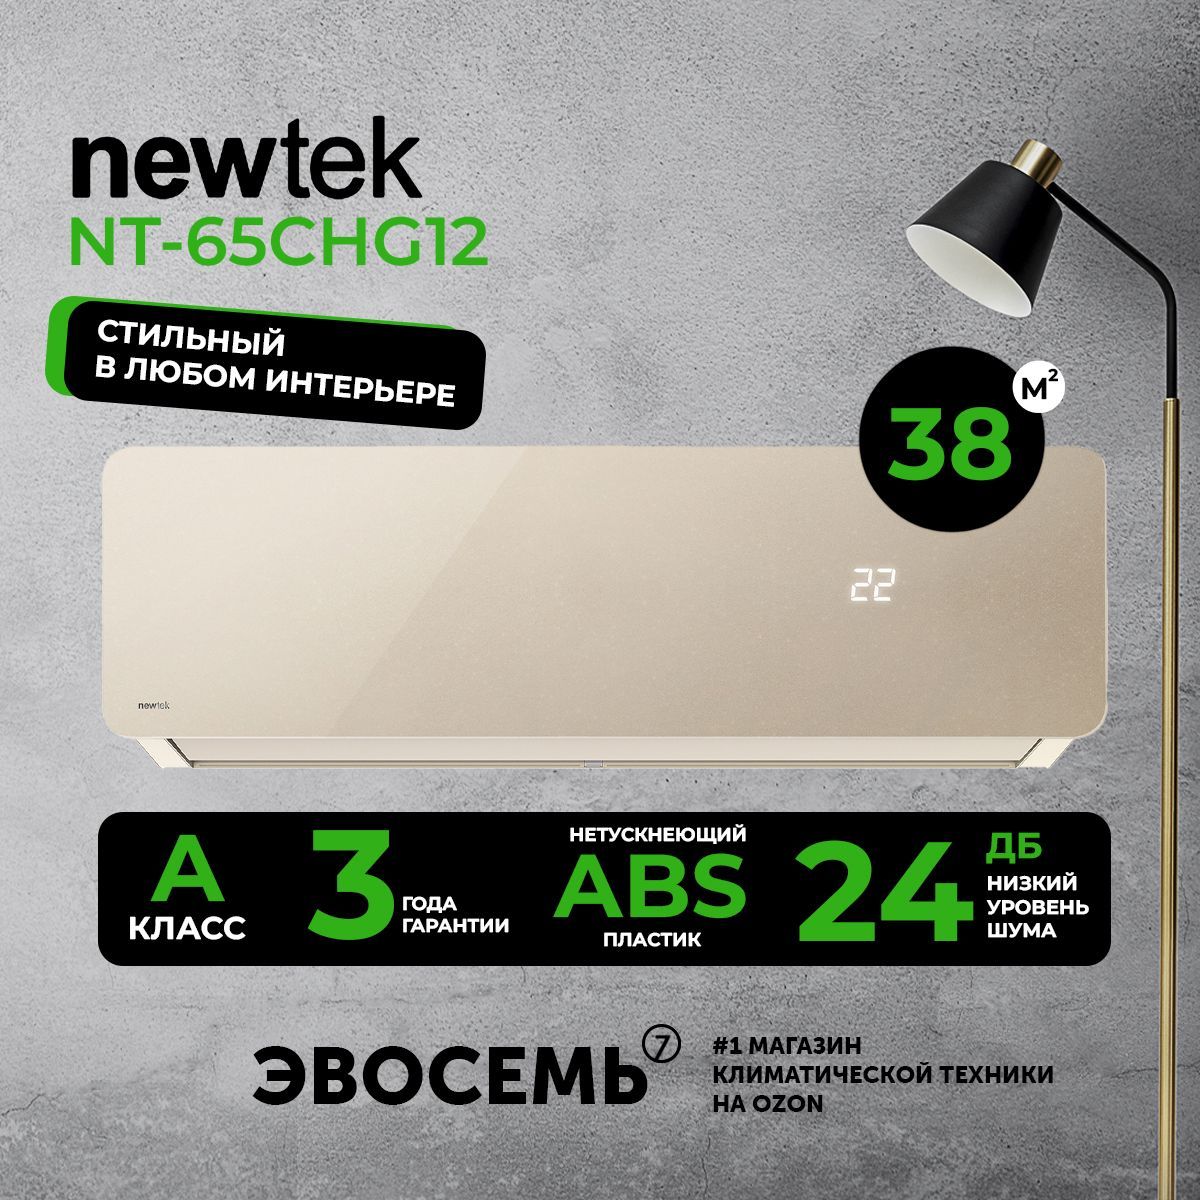 Сплит система newtek 65chb07. NEWTEK NT-65chb07. Сплит-система NEWTEK NT-65chg. NEWTEK NT 65 CHG 07. Сплит-система NEWTEK NT-65chndc12, инверторная, для помещения до 37 кв.м..